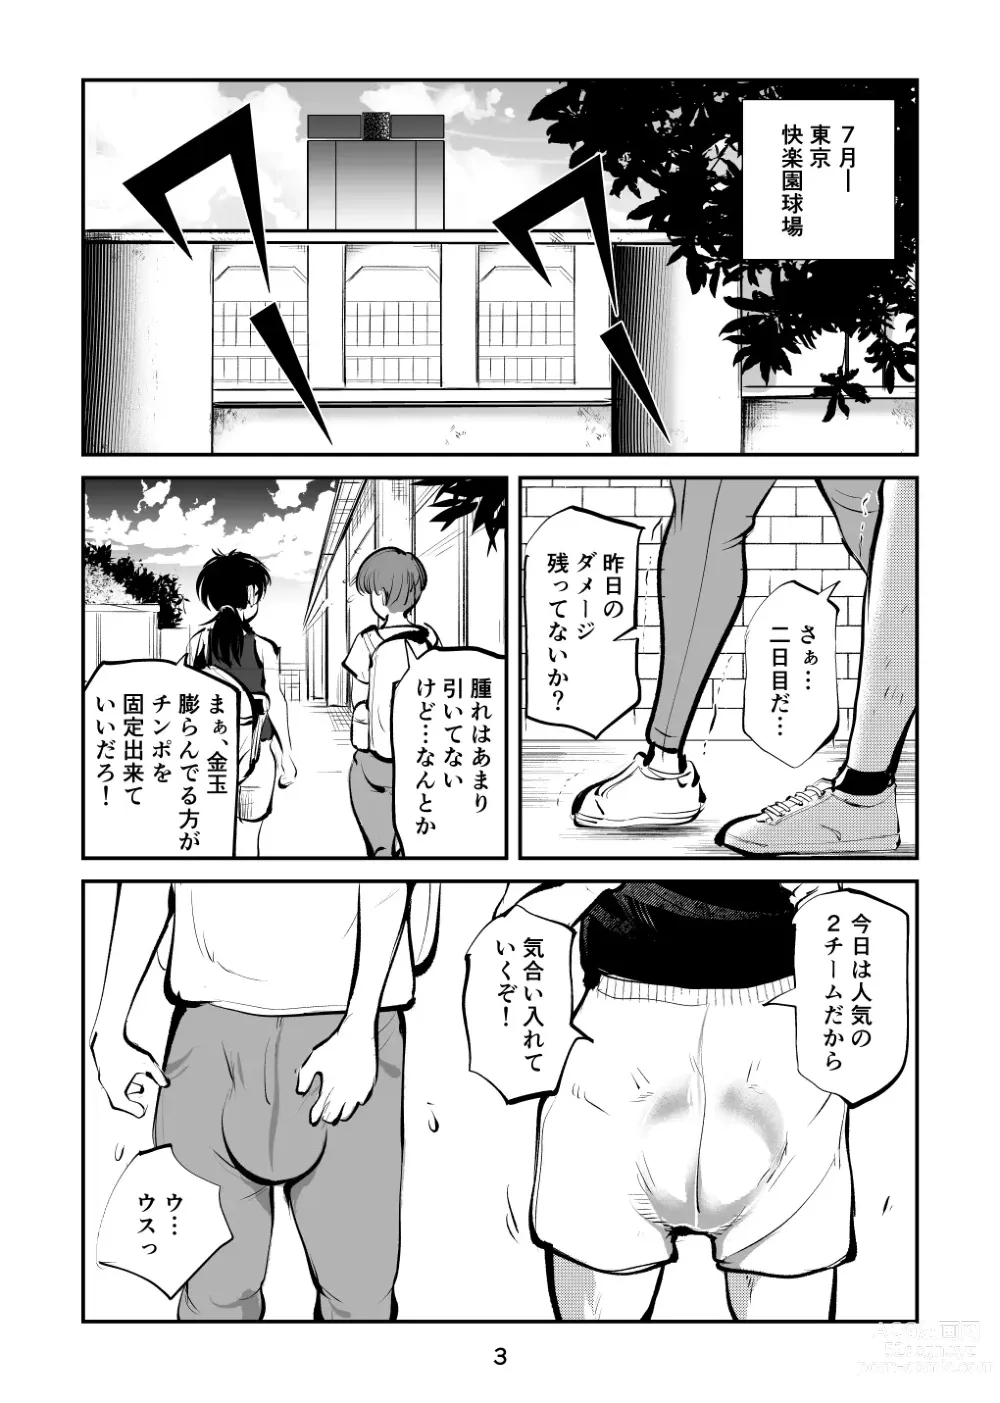 Page 3 of doujinshi Kinkeri Cheer Girl VS Tosatsuma Shakai Hito Cheer Girl-hen